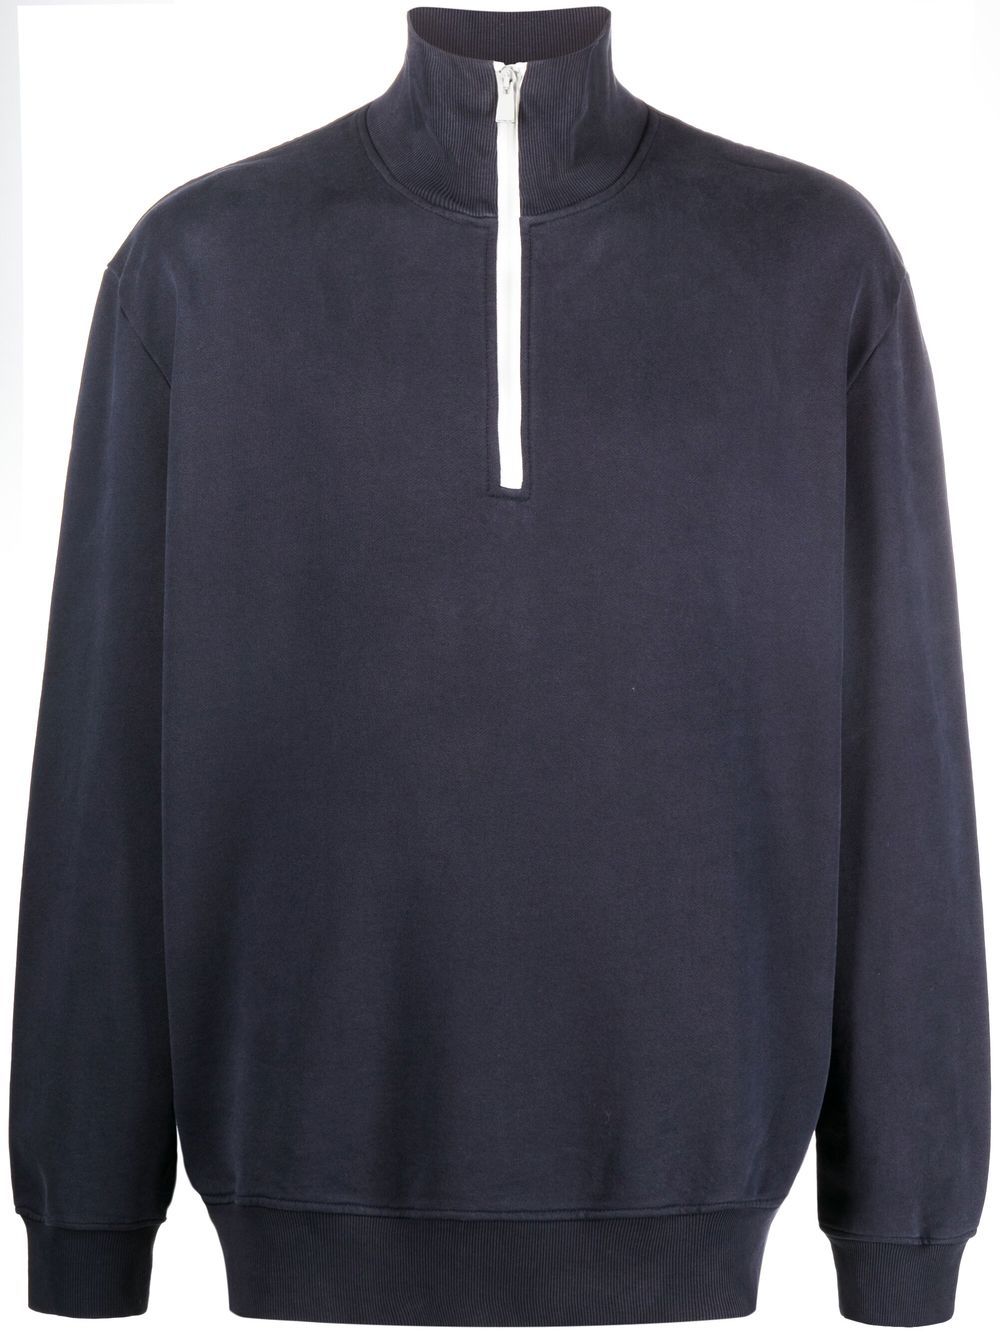 half-zip organic cotton sweatshirt